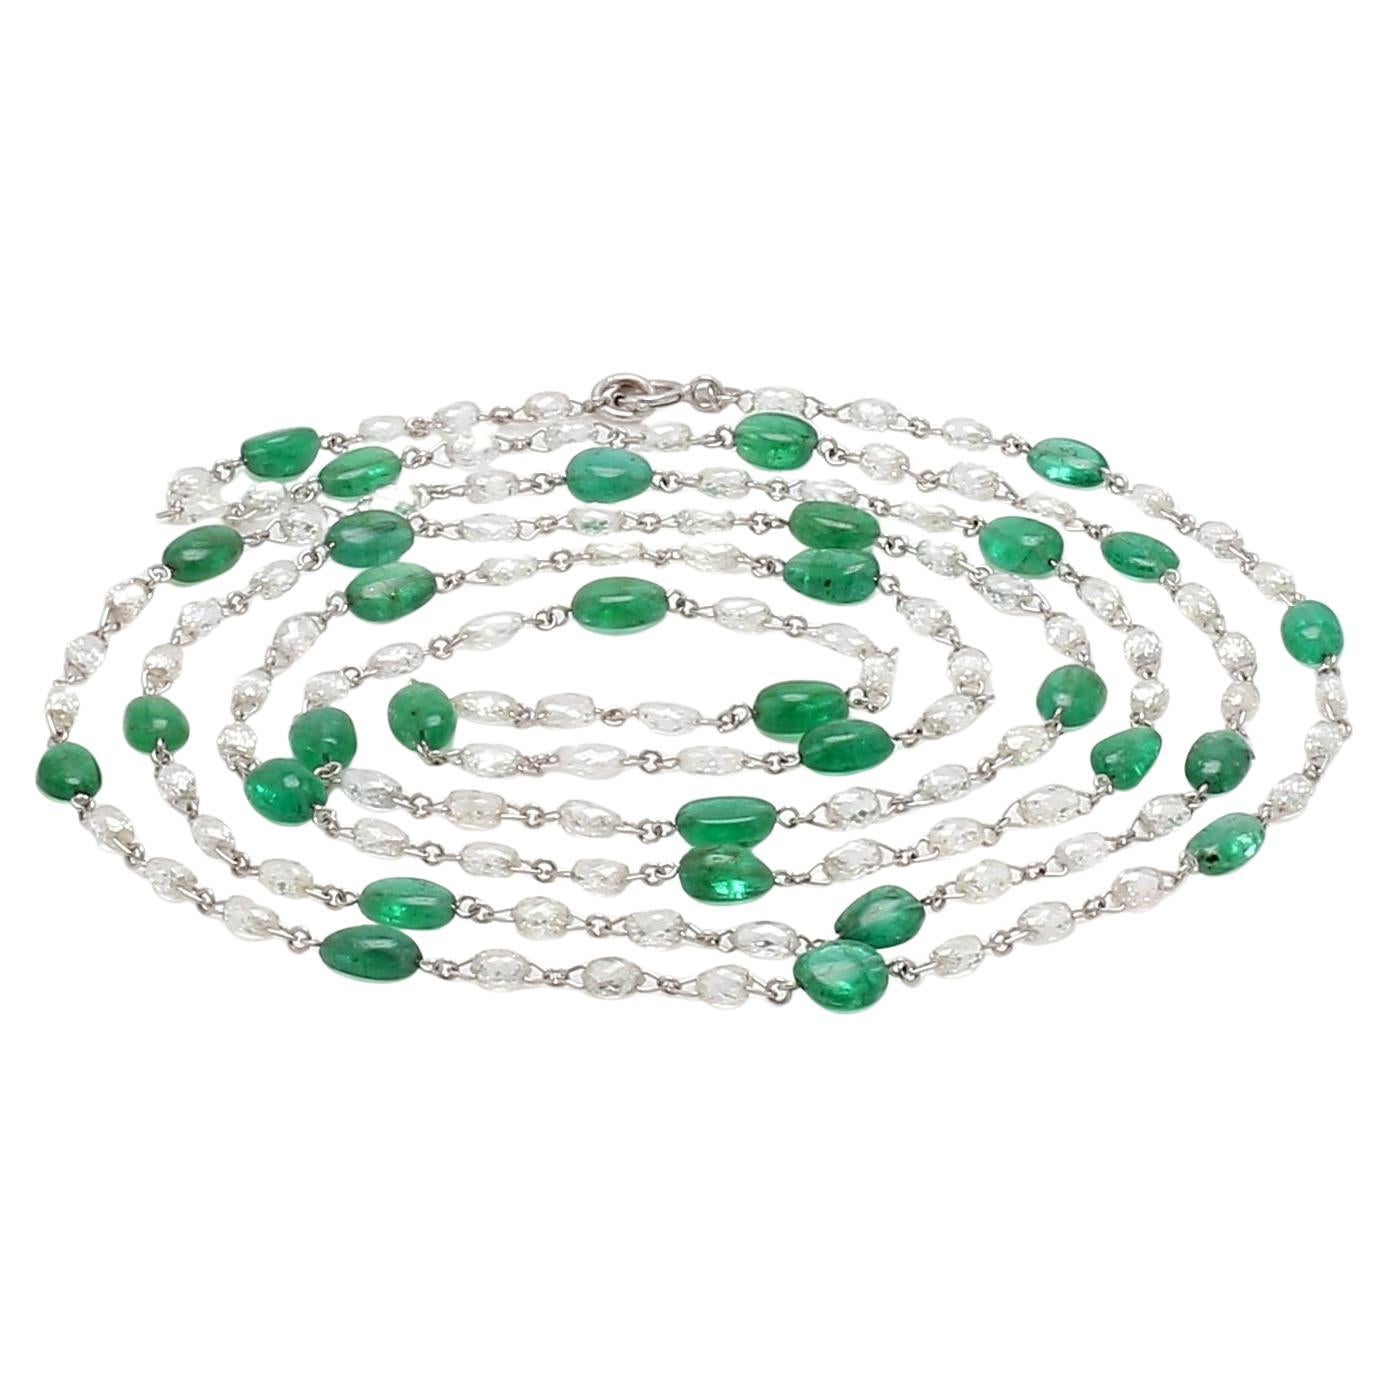 PANIM Diamond Briolette & Emerald Necklace in 18K White Gold